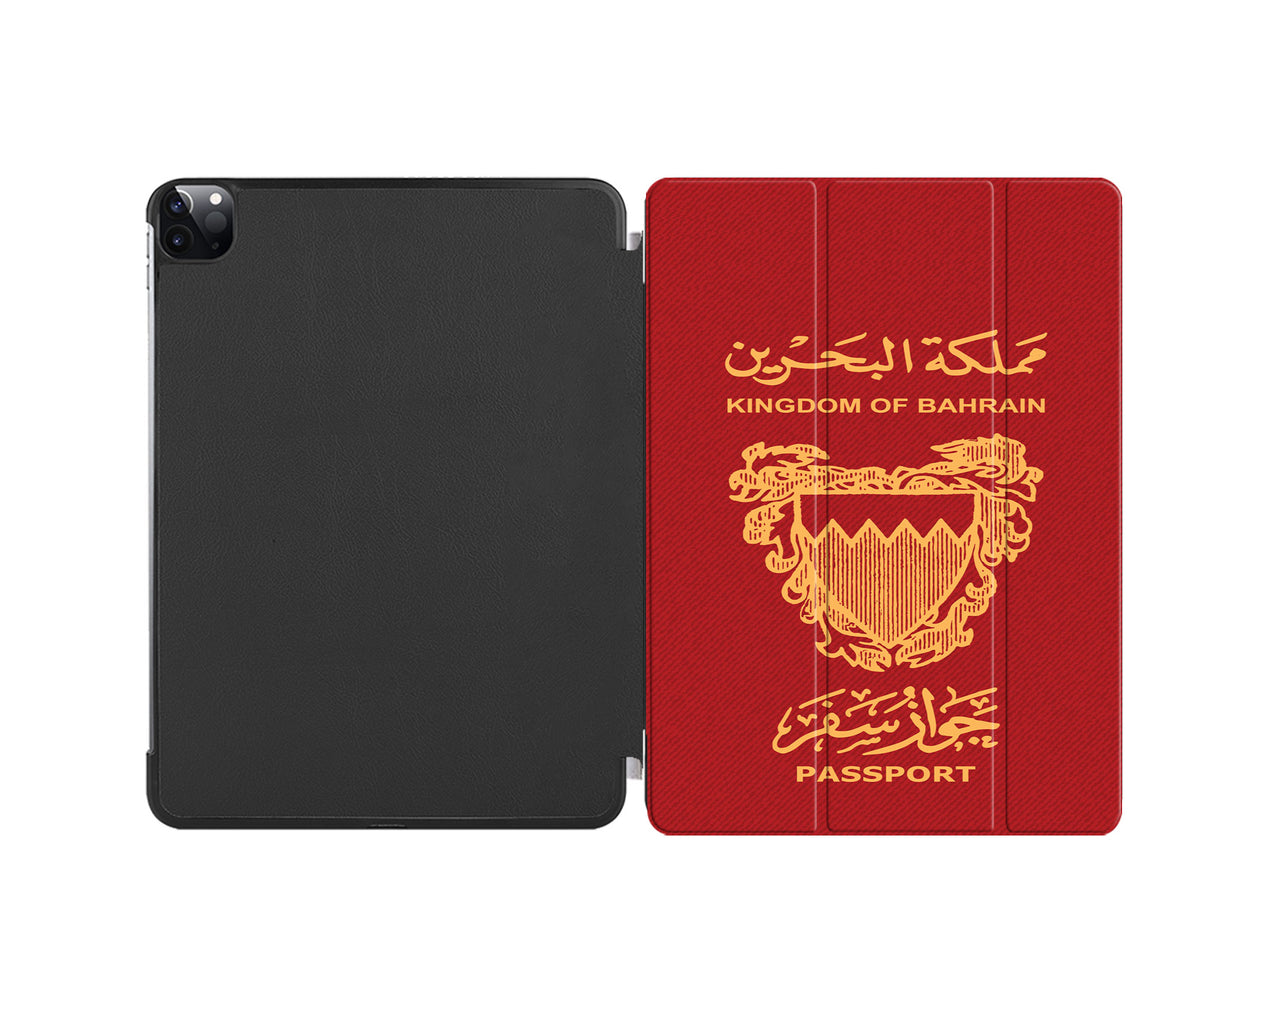 Bahrain Passport Designed iPad Cases